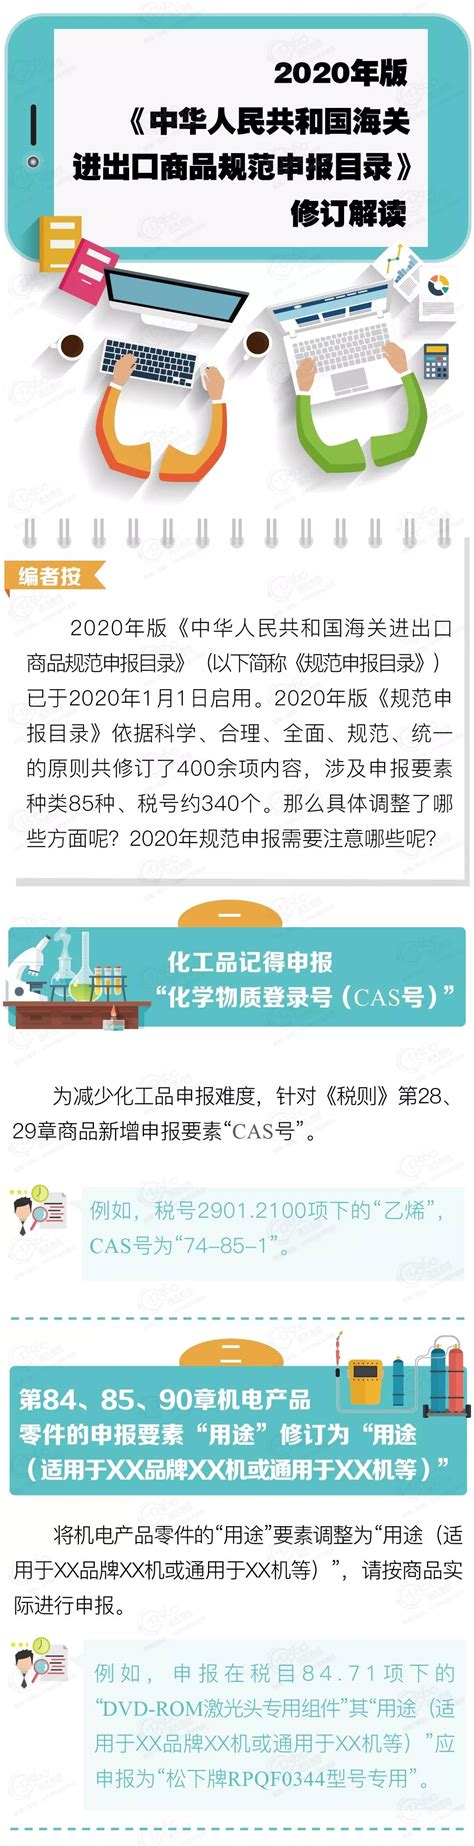 2020年《规范申报目录》修订解读-外贸进口代理|上海外贸公司